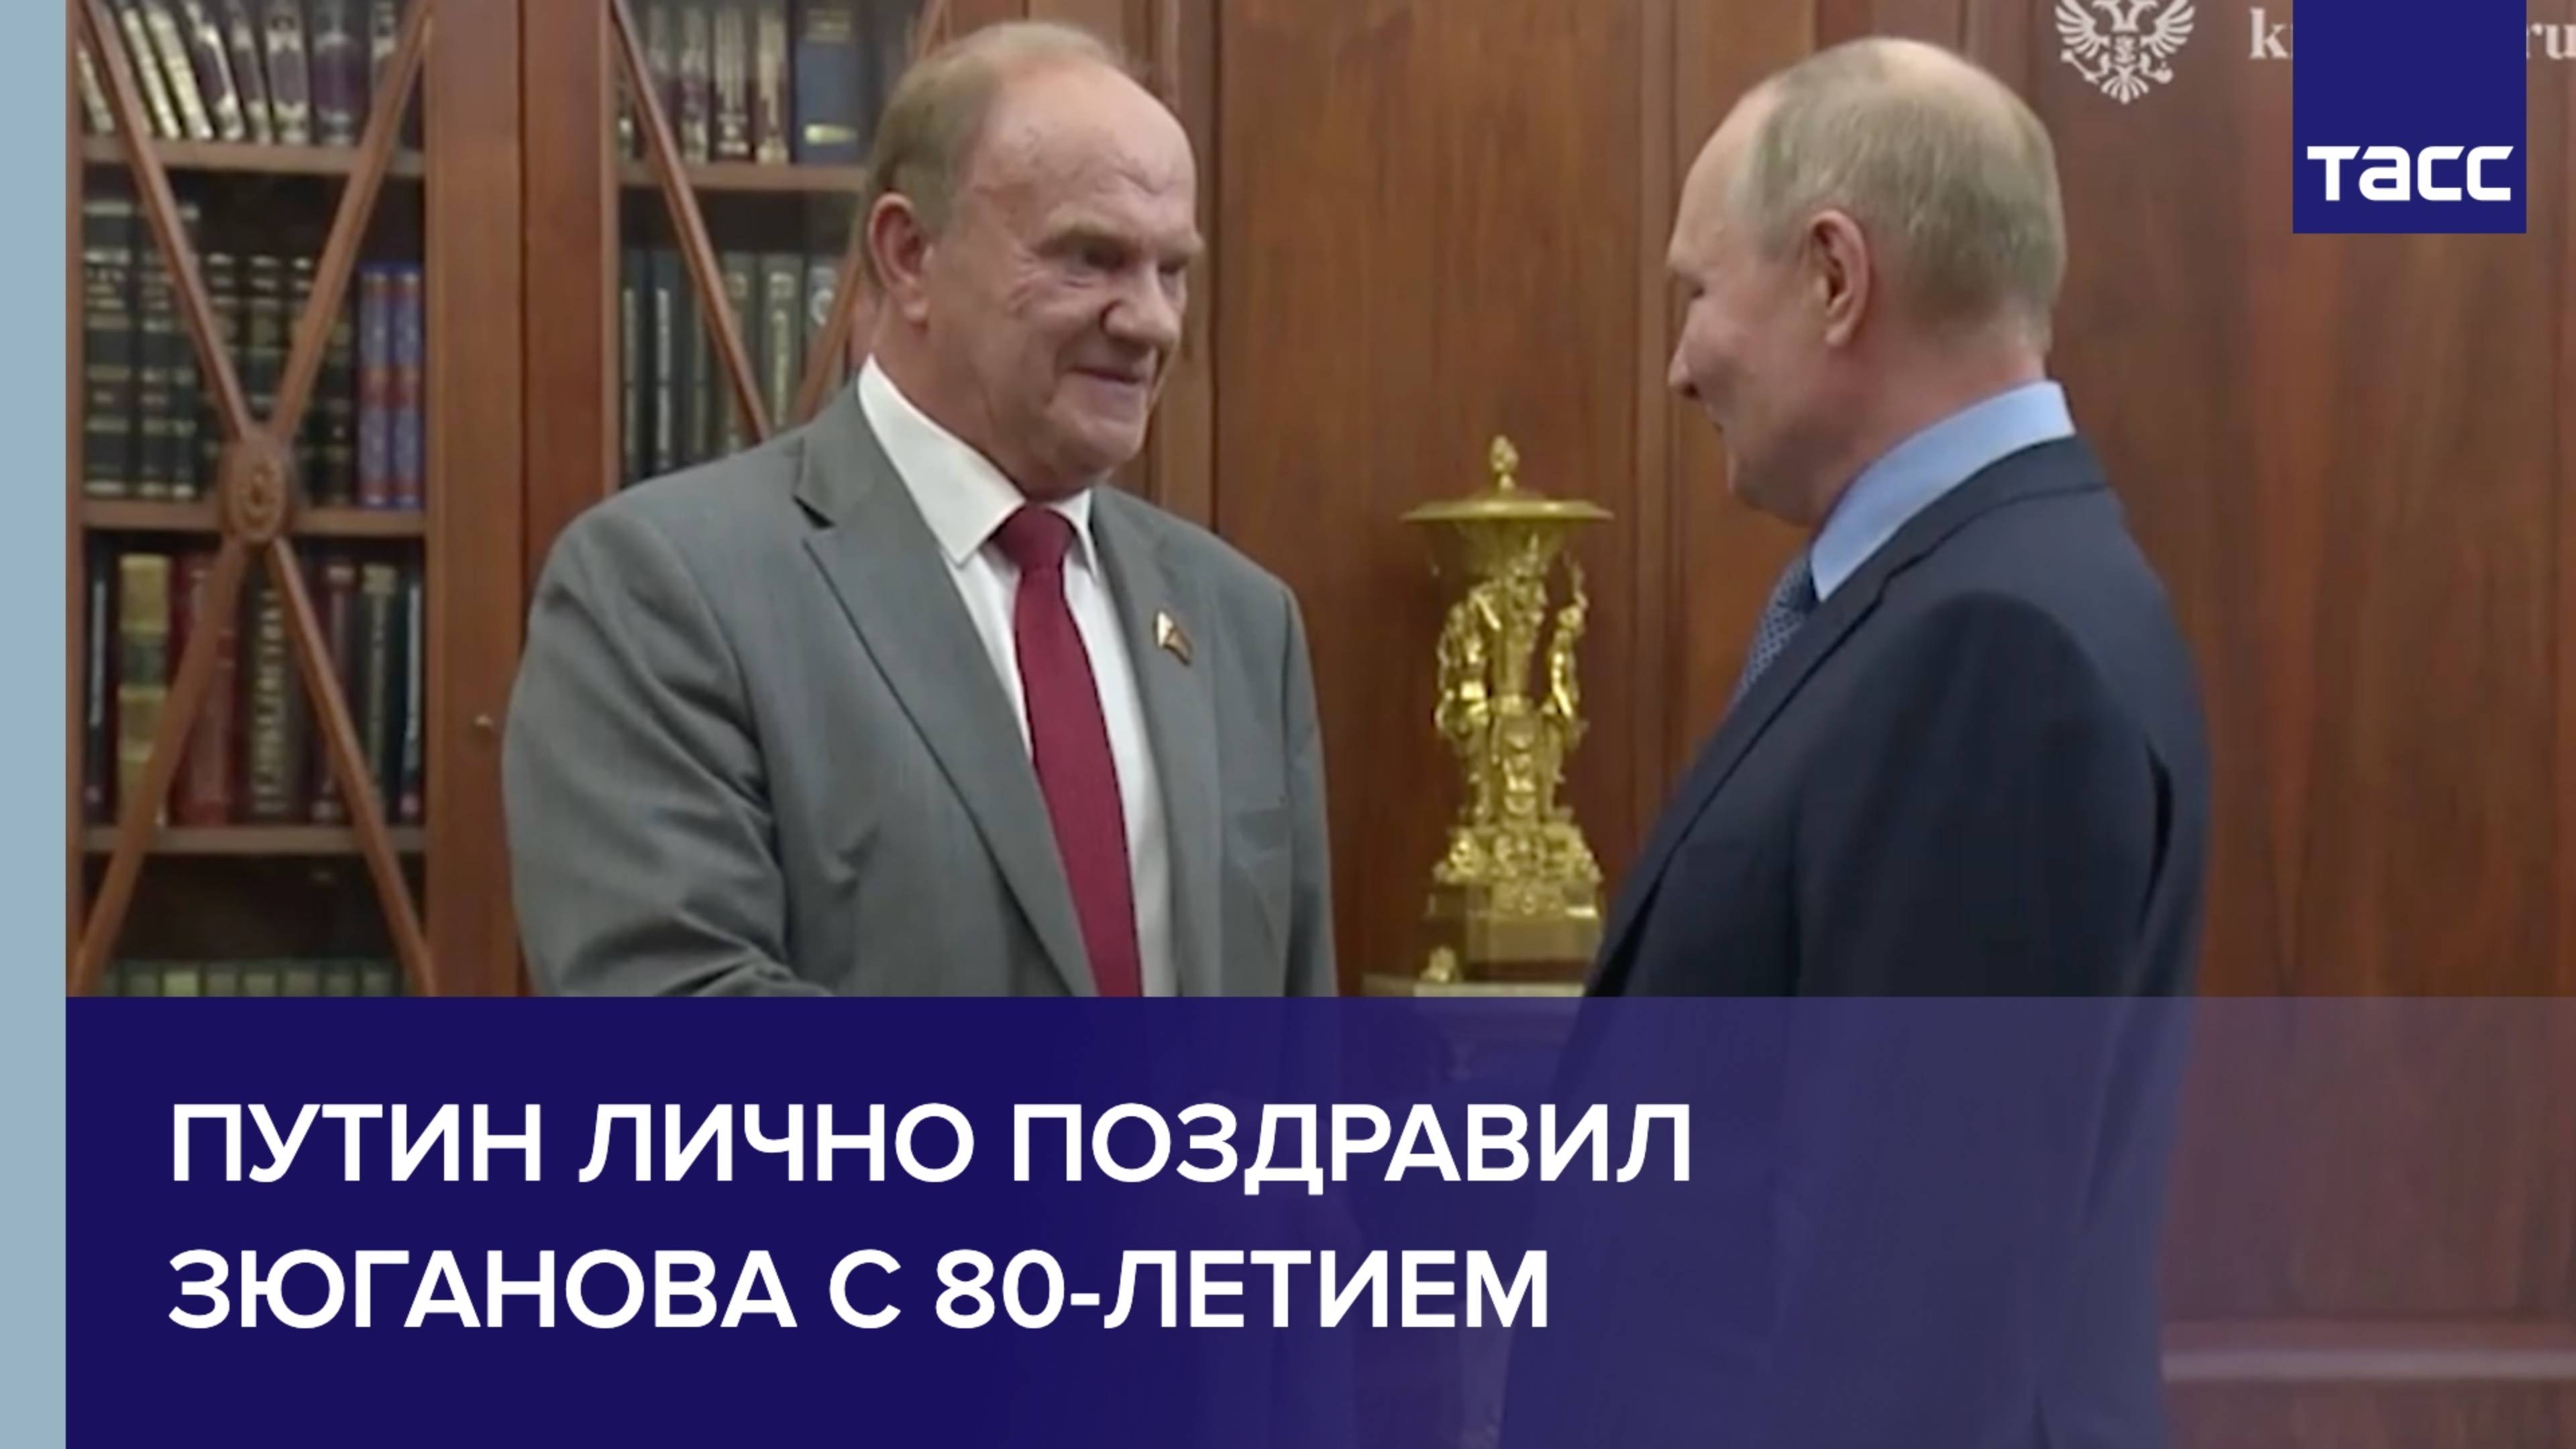 Путин лично поздравил Зюганова с 80-летием